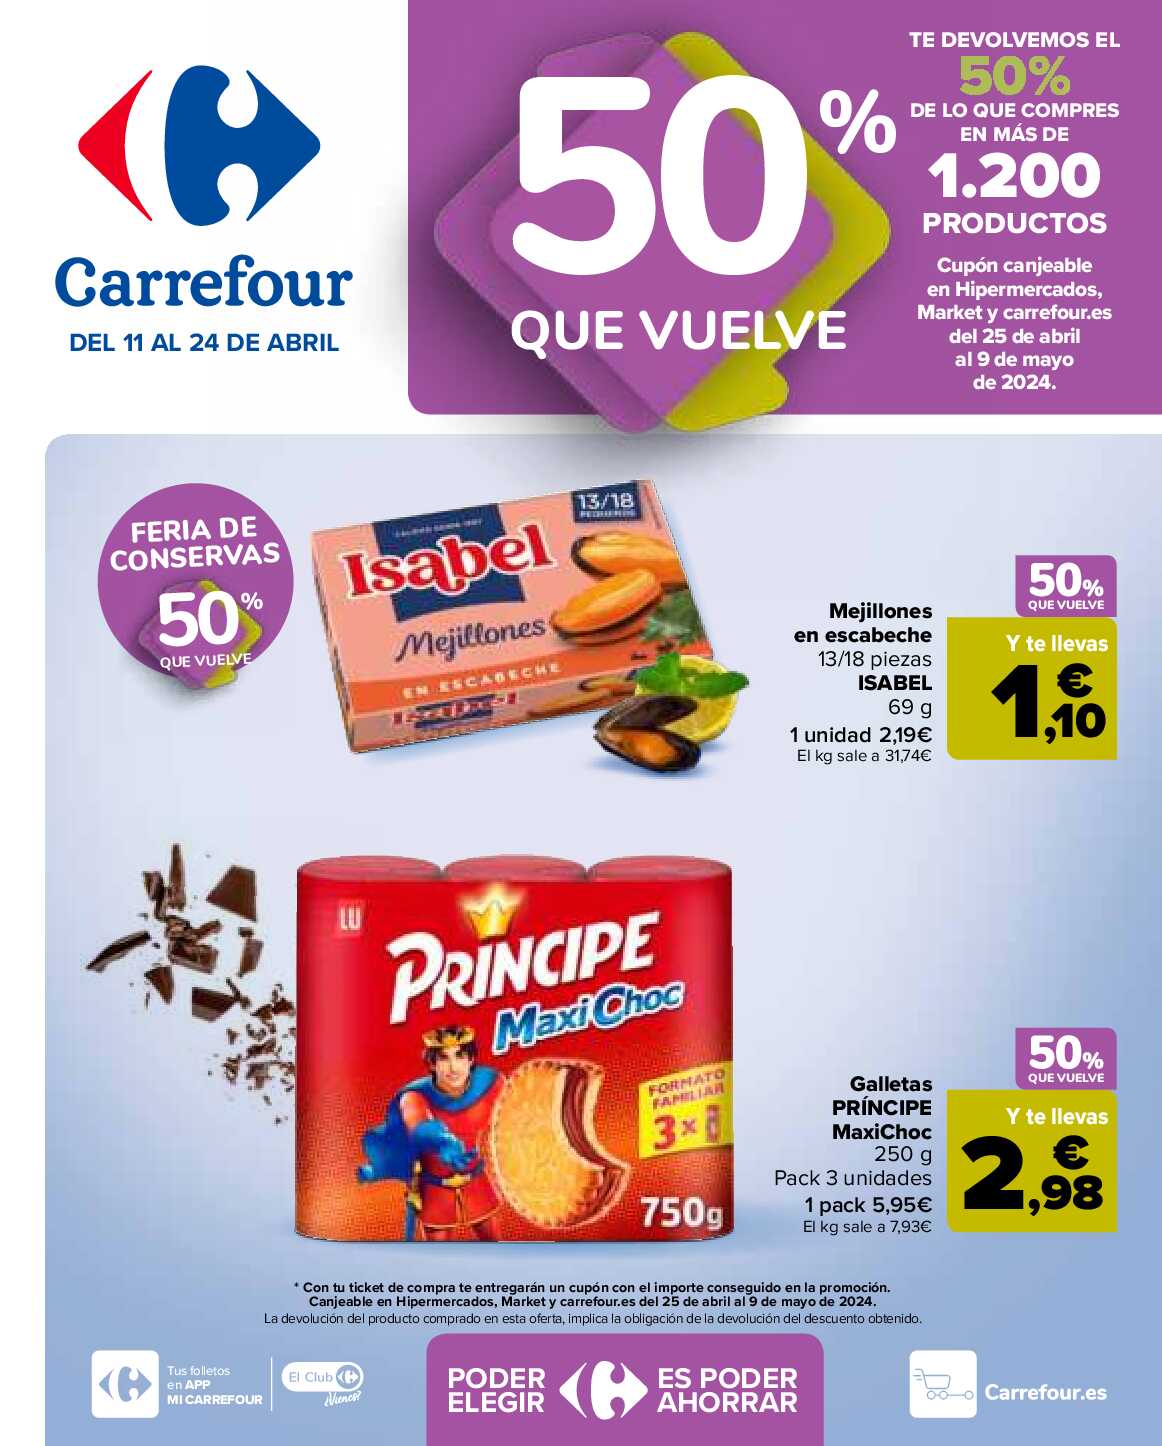 50% que vuelve Carrefour. Página 01